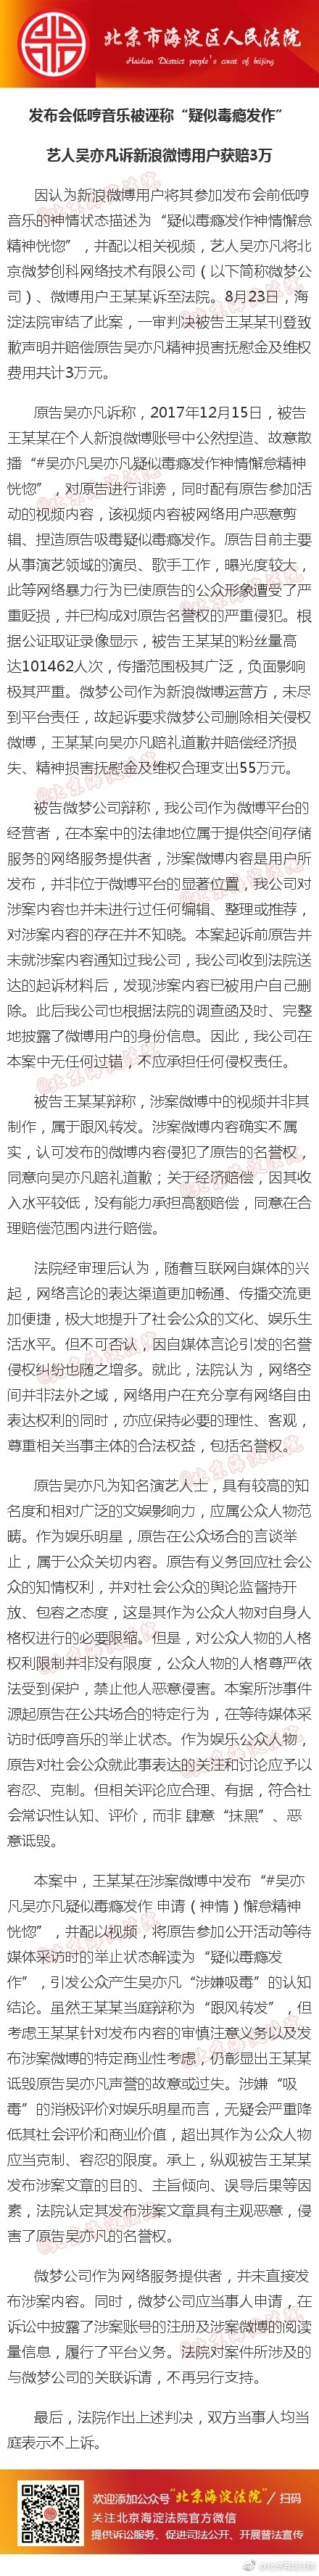 吴亦凡被诬“疑似毒瘾发作” 诉该用户获赔3万